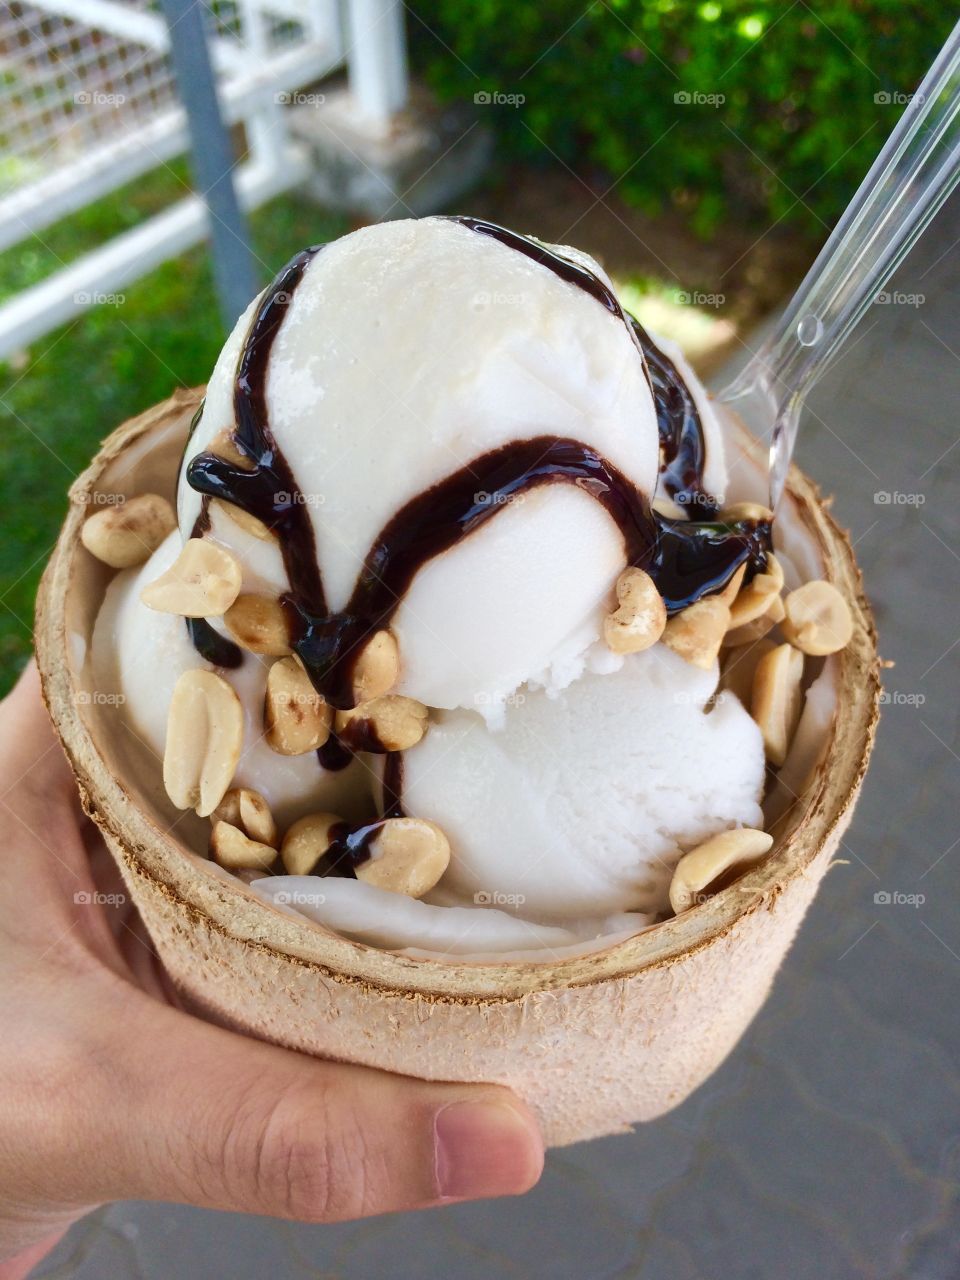 Coconut Ice cream. Coconut Ice cream in the shell